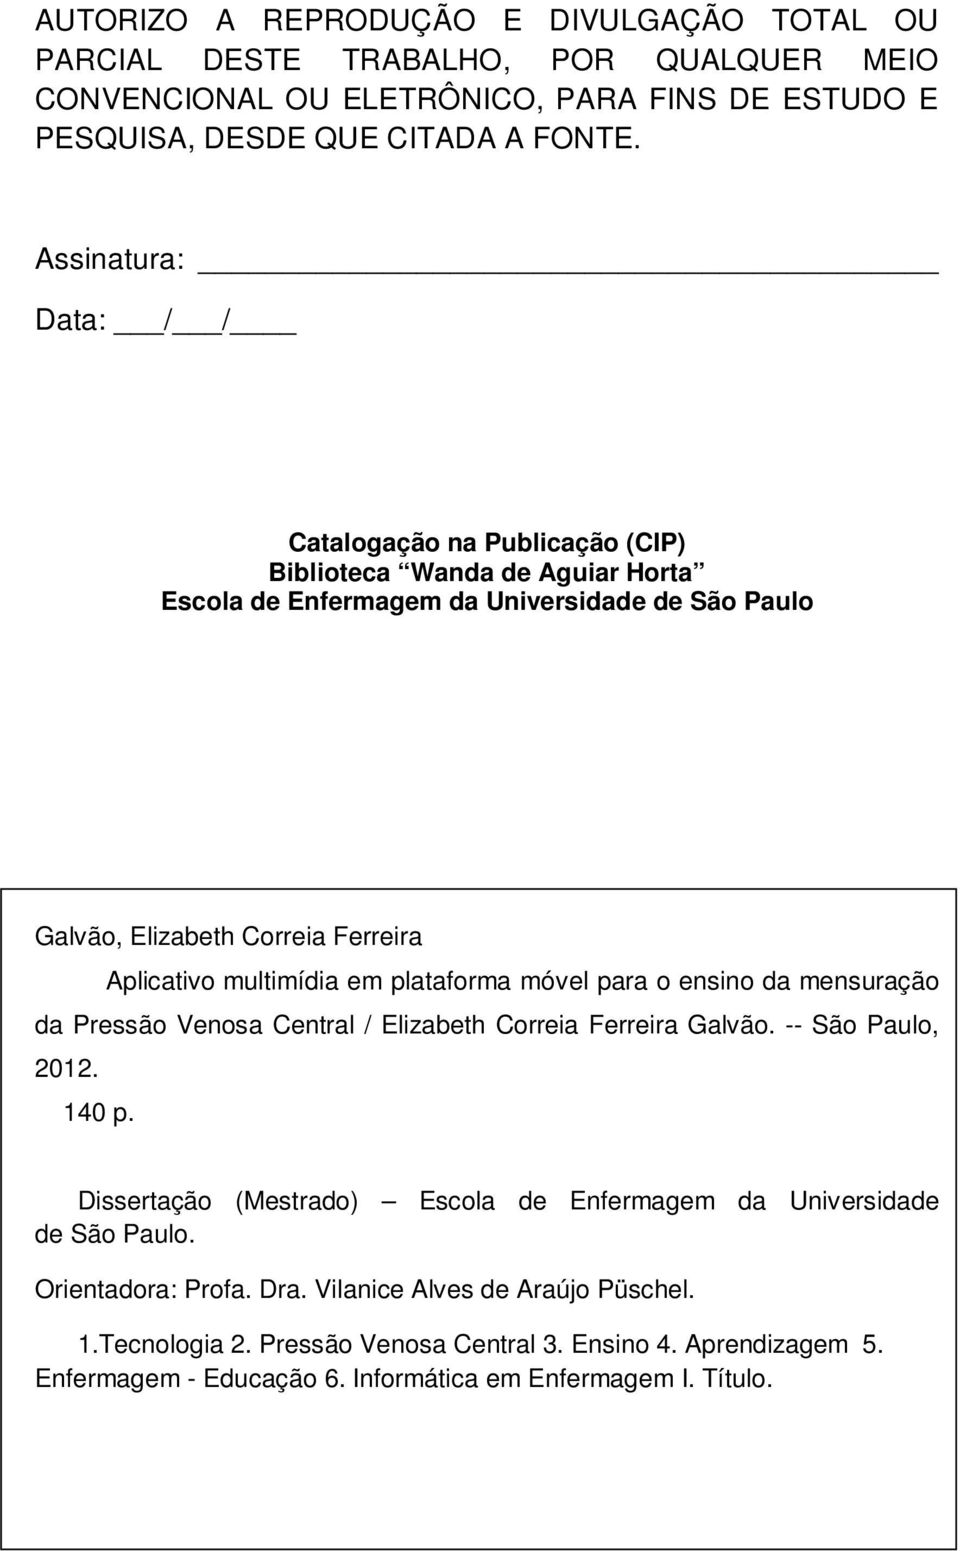 multimídia em plataforma móvel para o ensino da mensuração da Pressão Venosa Central / Elizabeth Correia Ferreira Galvão. -- São Paulo, 2012. 140 p.